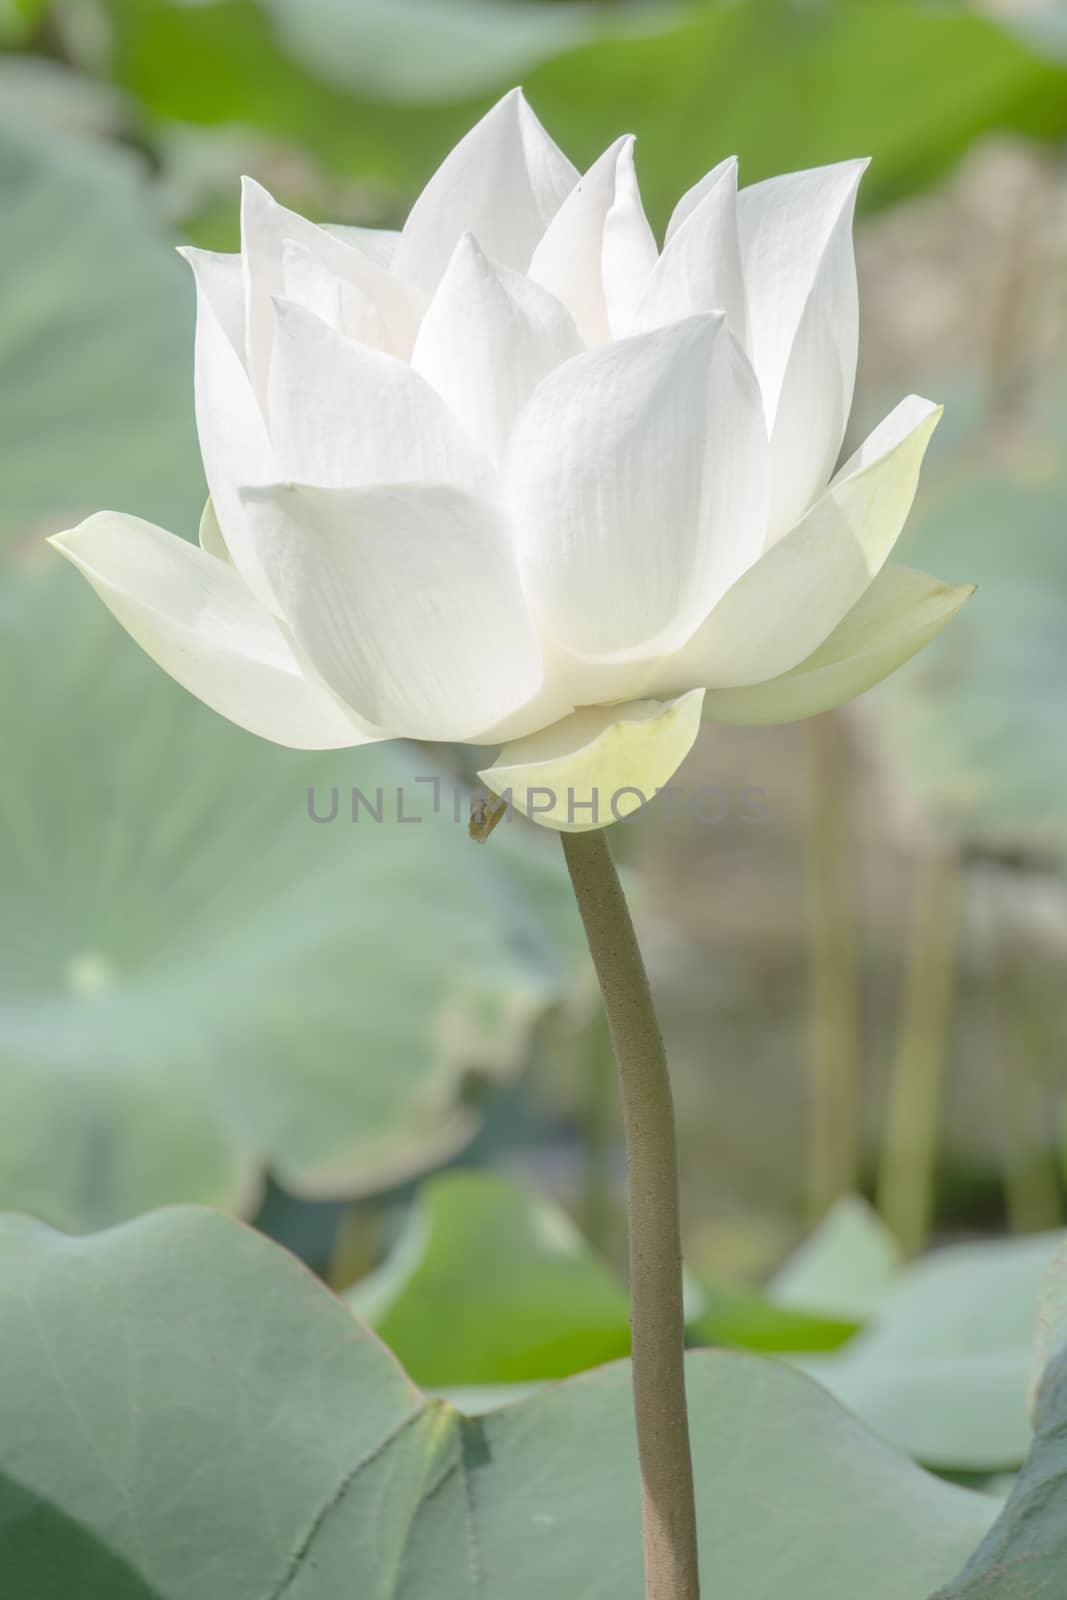 White Lotus in Basin by kobfujar